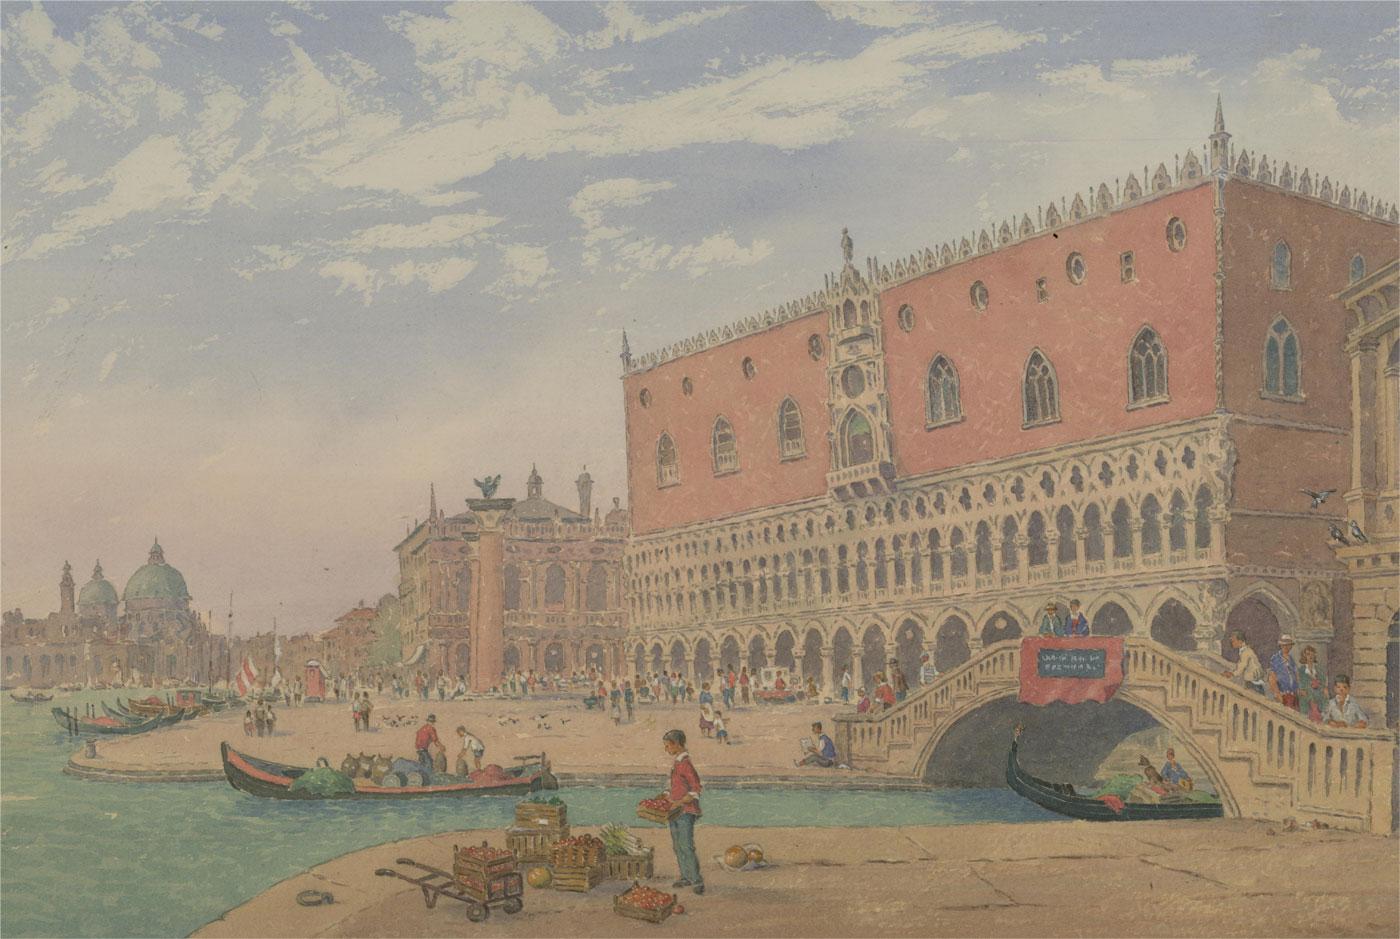 Eine eindrucksvolle Aquarelldarstellung des Dogenpalastes in Venedig. Das Gemälde ist auf schwerem Velourskarton gemalt. Auf schwerem Velin-Karton.
